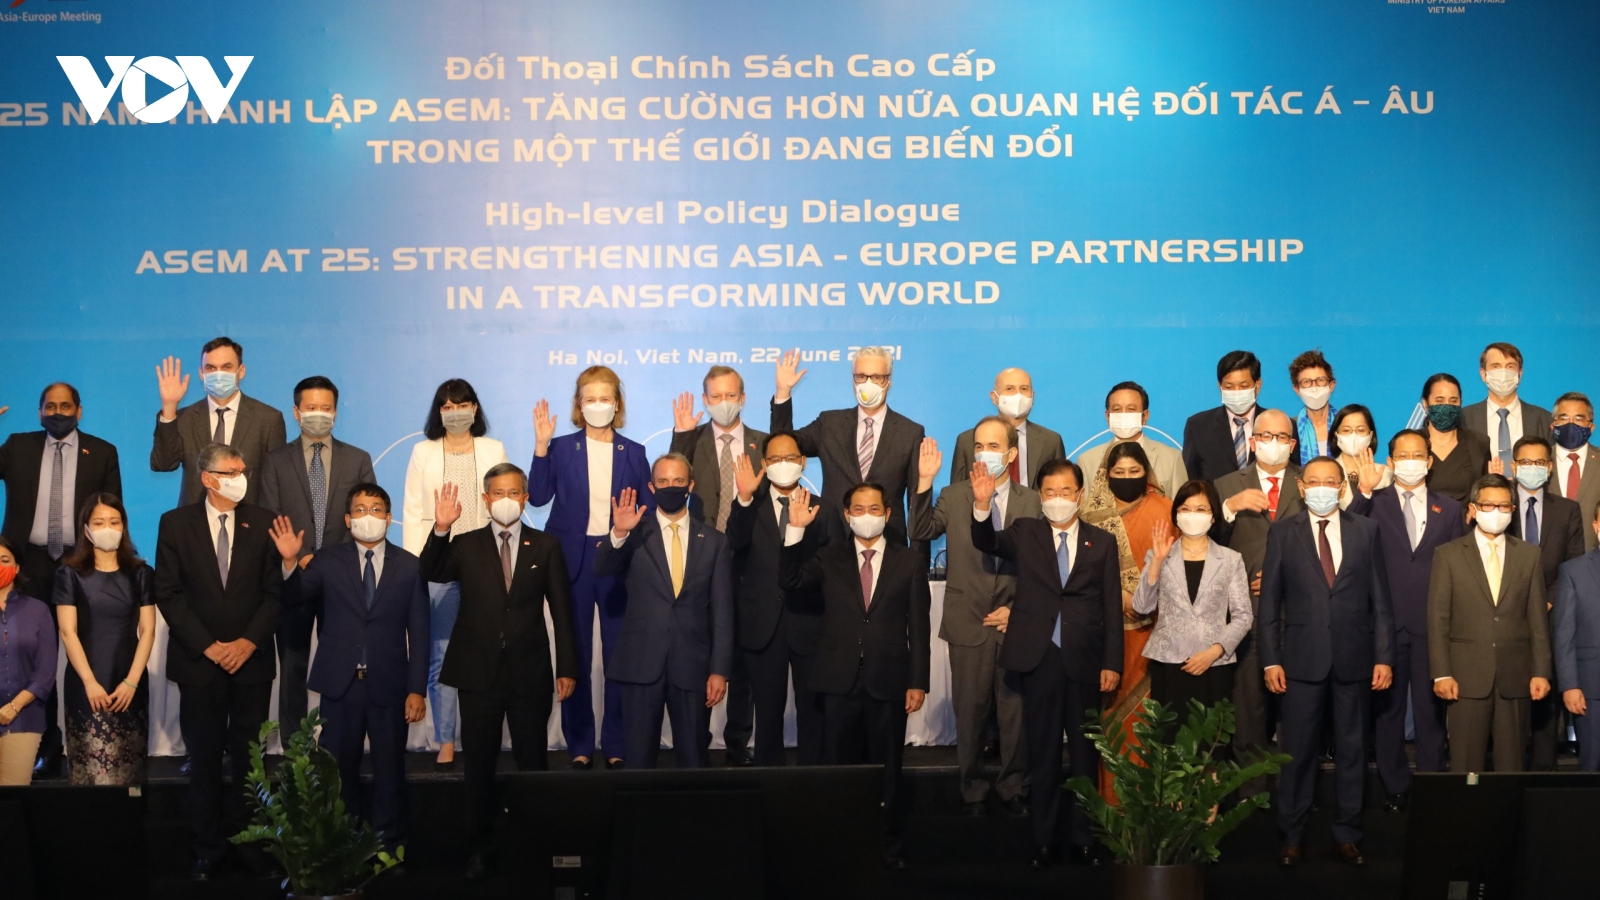 Đối thoại chính sách cao cấp ASEM: Xây dựng một tầm nhìn mới